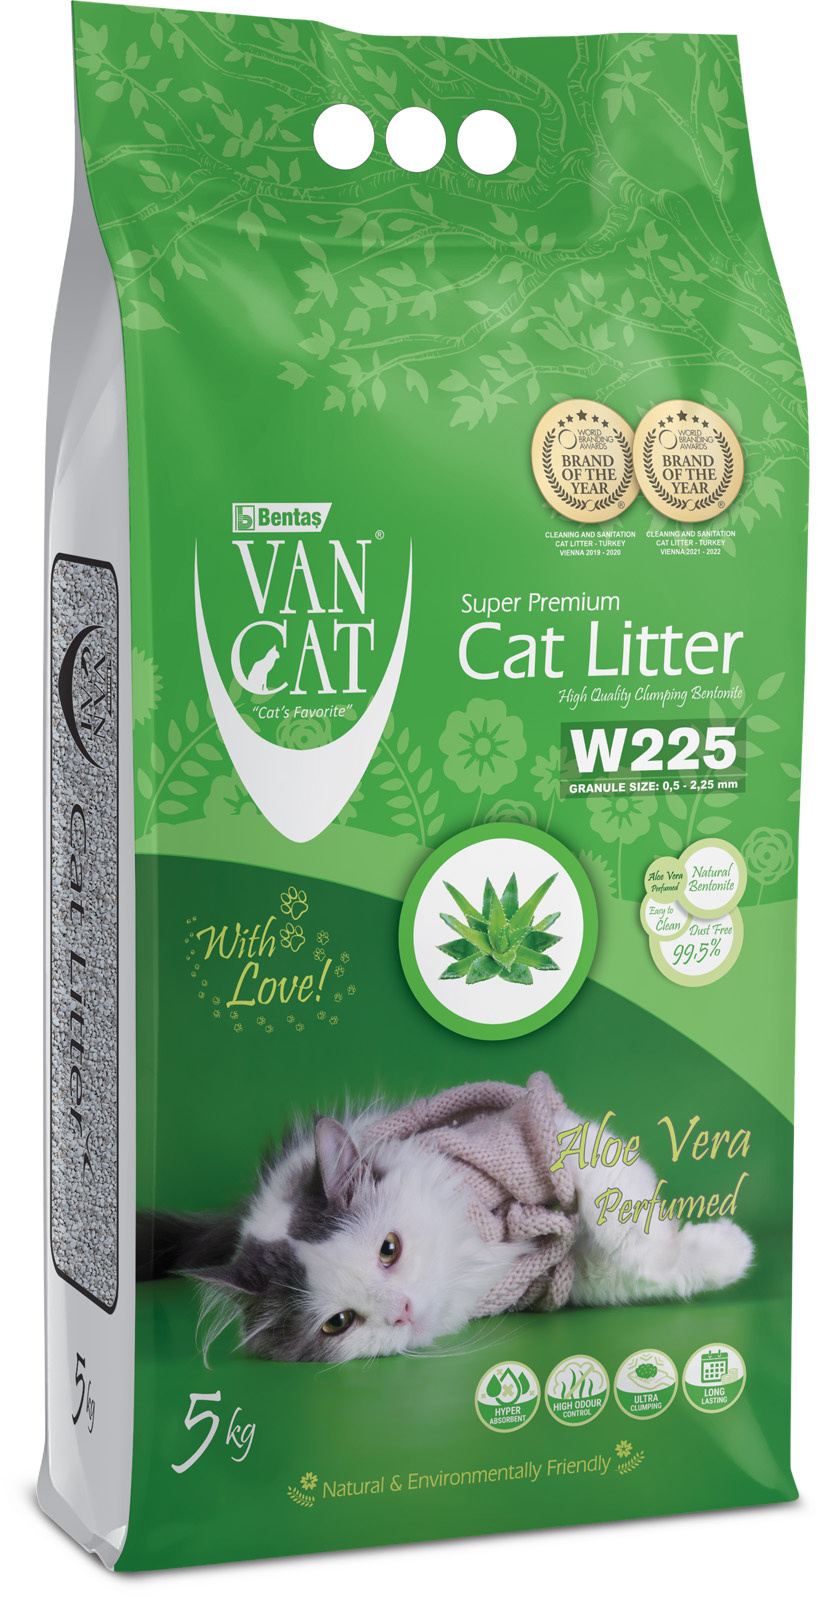 Van Cat Van Cat комкующийся наполнитель без пыли с ароматом алое вера, пакет (5 кг) van cat van cat комкующийся наполнитель 100% натуральный без пыли пакет 5 кг